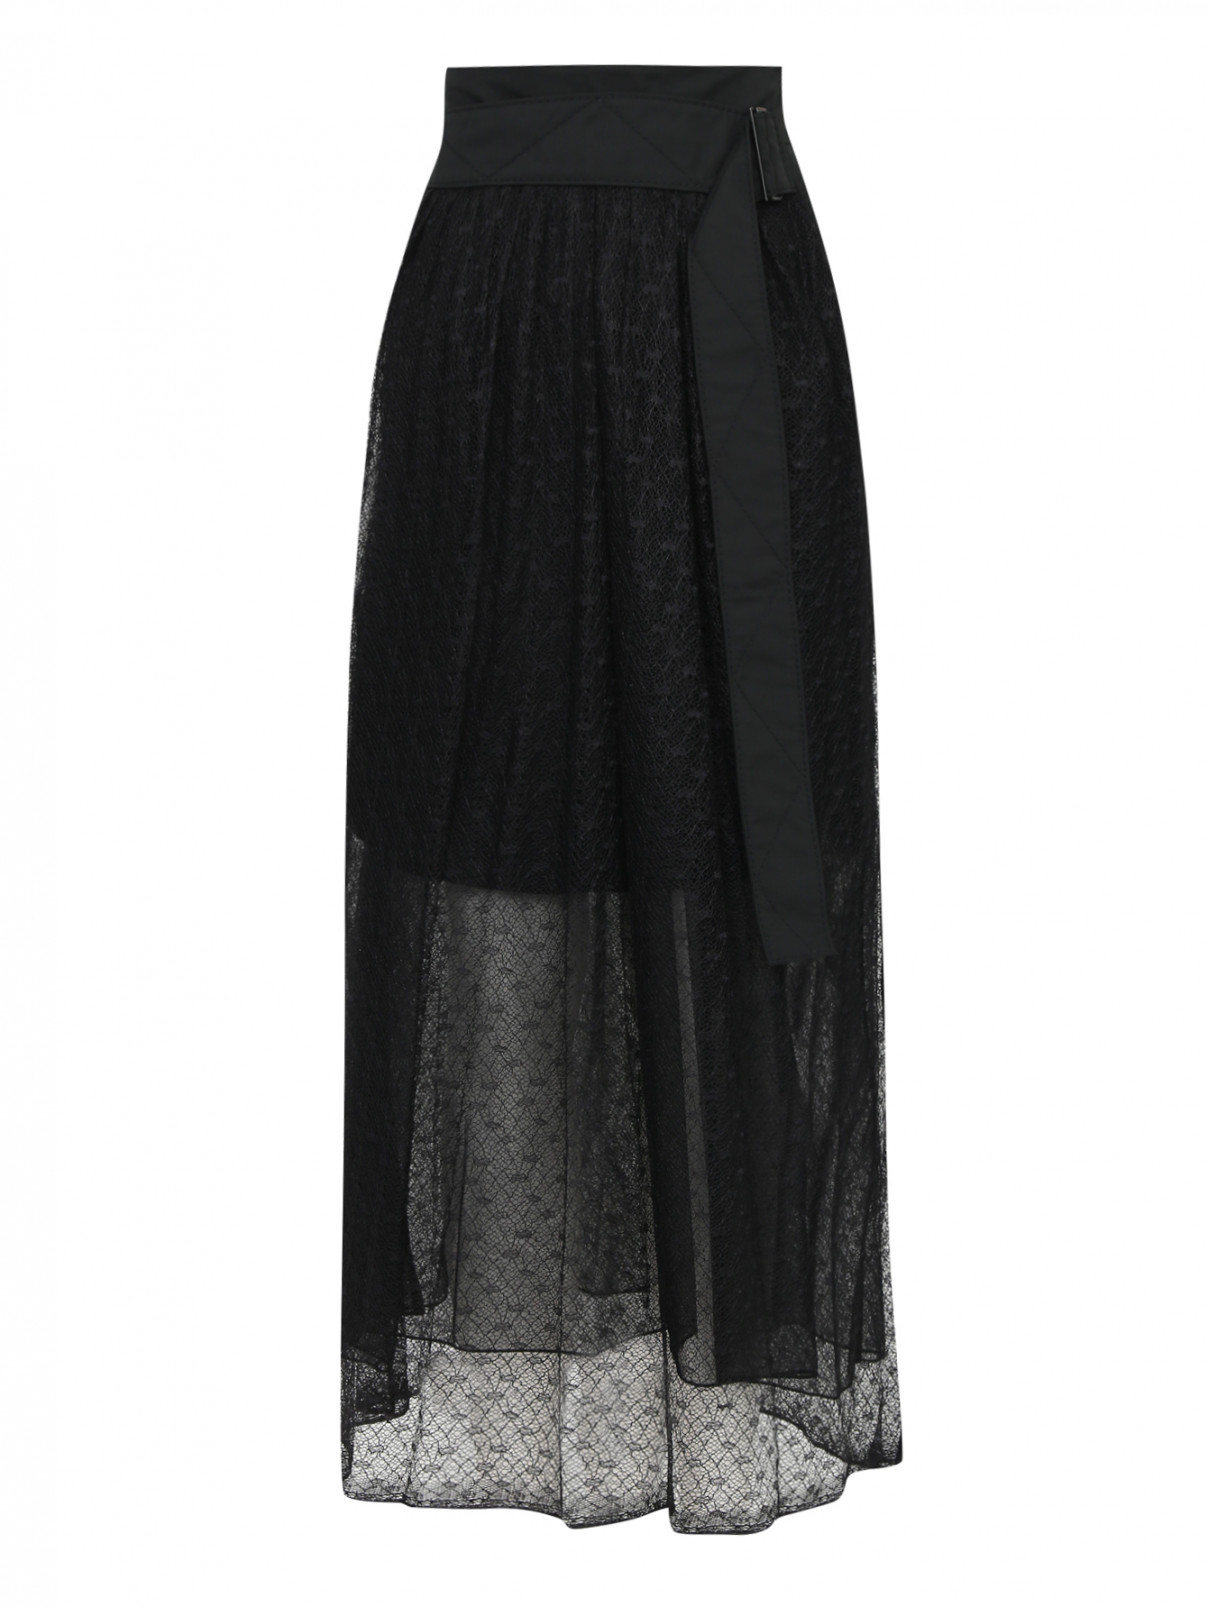 Полупрозрачная юбка-миди с контрастной отделкой Dorothee Schumacher  –  Общий вид  – Цвет:  Черный